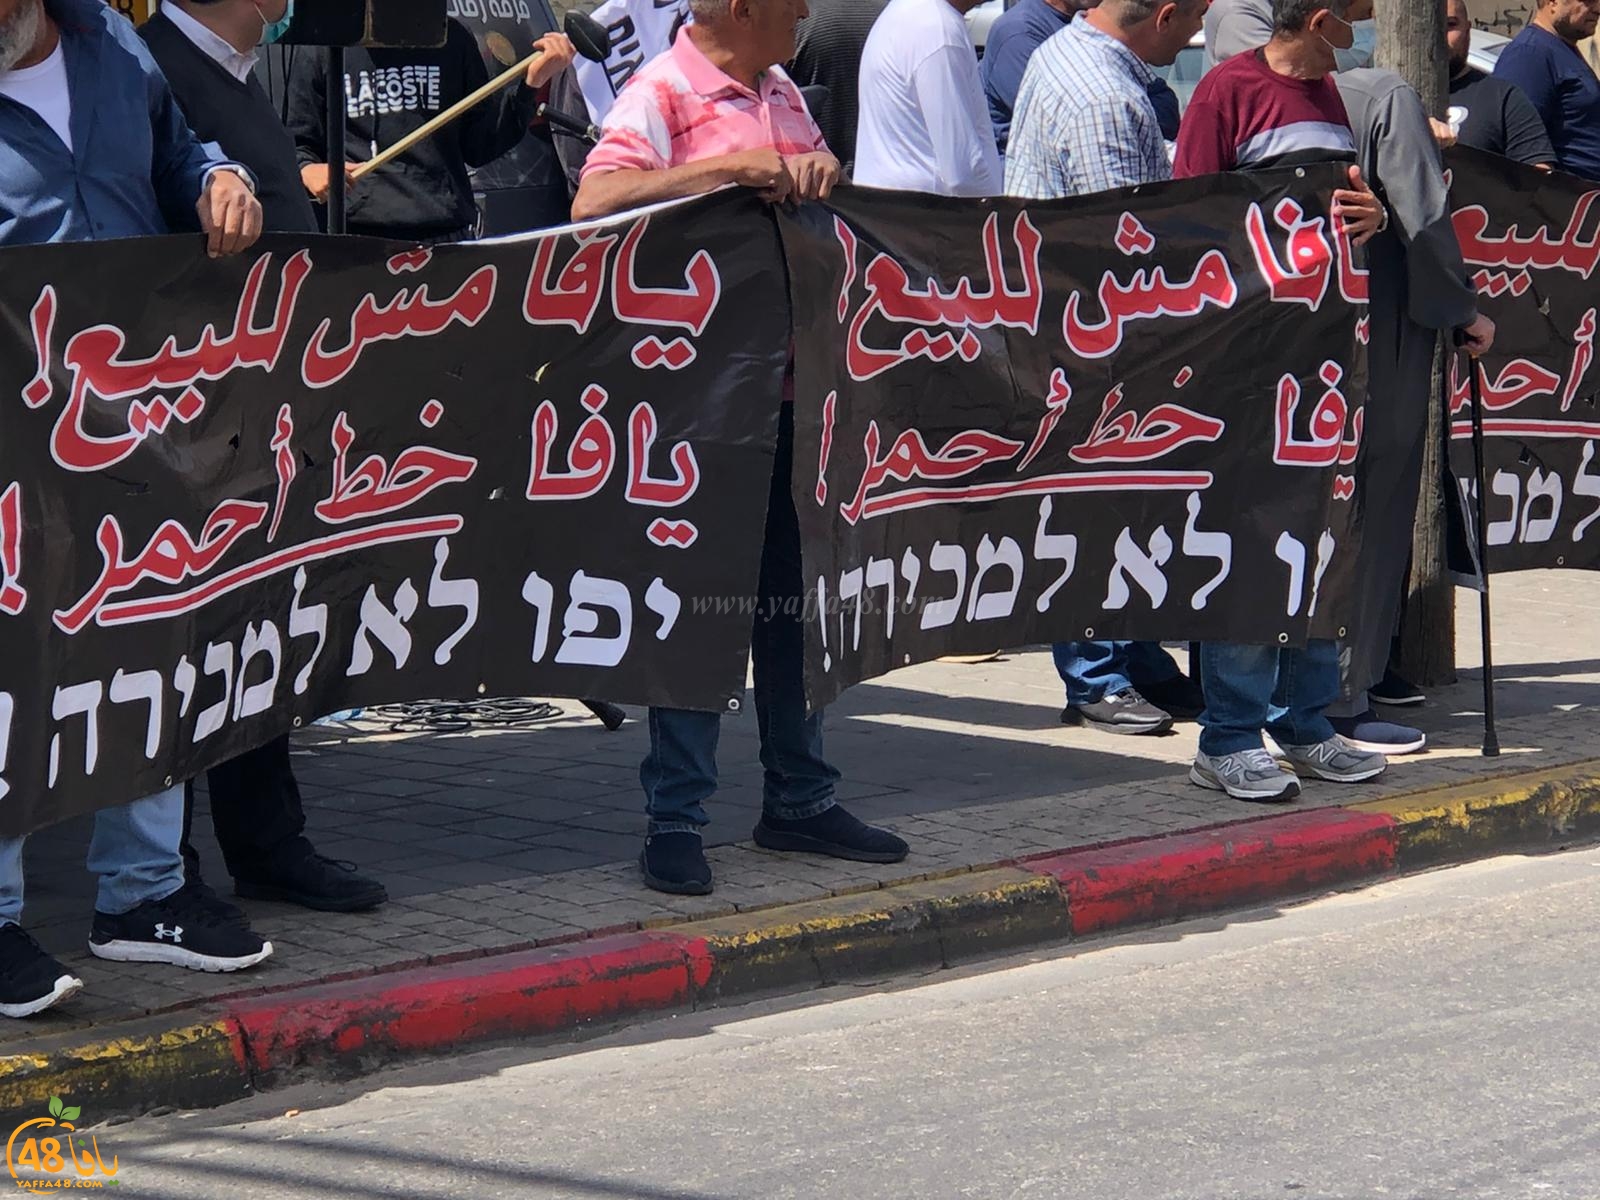 وقفة احتجاجية لأهالي مدينة يافا ضد شركة العميدار وسياساتها للأسبوع السابع